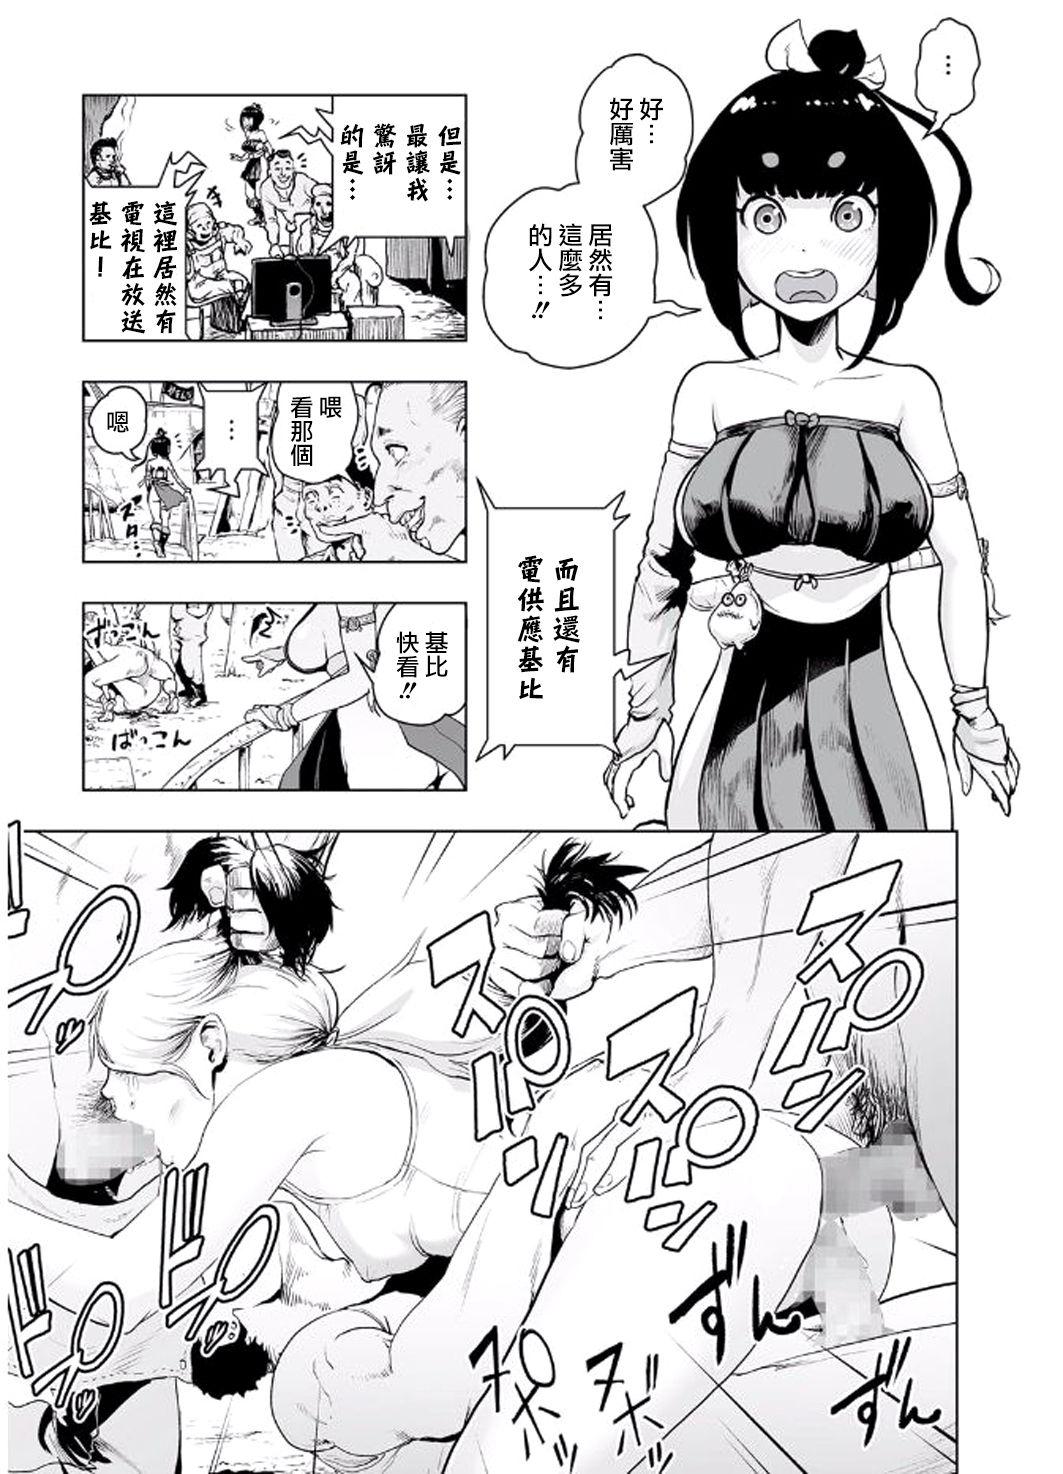 Tributo MOMO! Daisanwa Jetta City no Dokudenpa Oni no Maki Ballbusting - Page 6